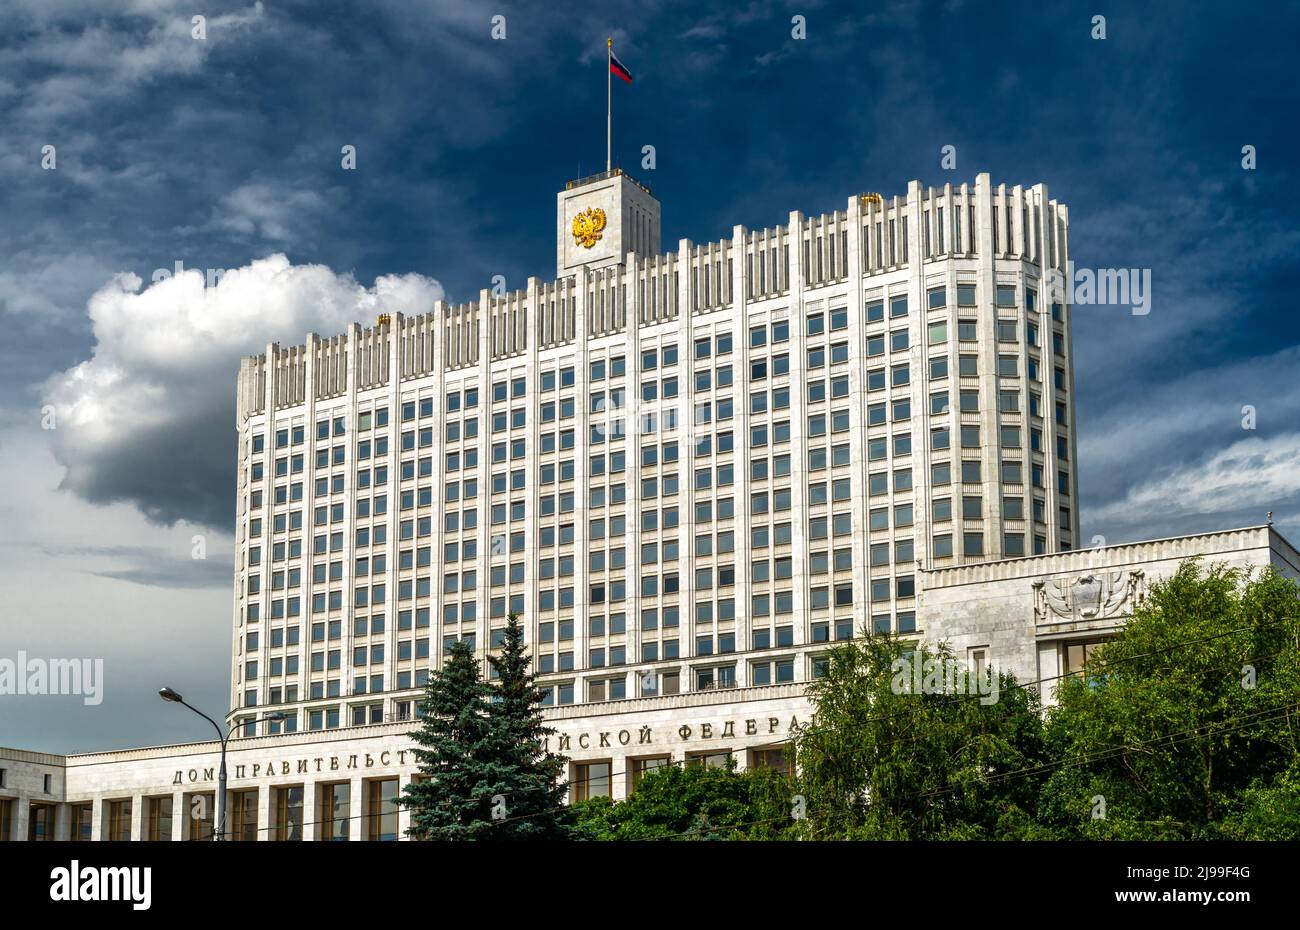 Russisches Regierungshaus oder Weißes Haus, Moskau, Russland. Ansicht des Regierungsgebäudes der Russischen Föderation (RF) auf blauem Himmel Hintergrund. Landschaft von Mos Stockfoto